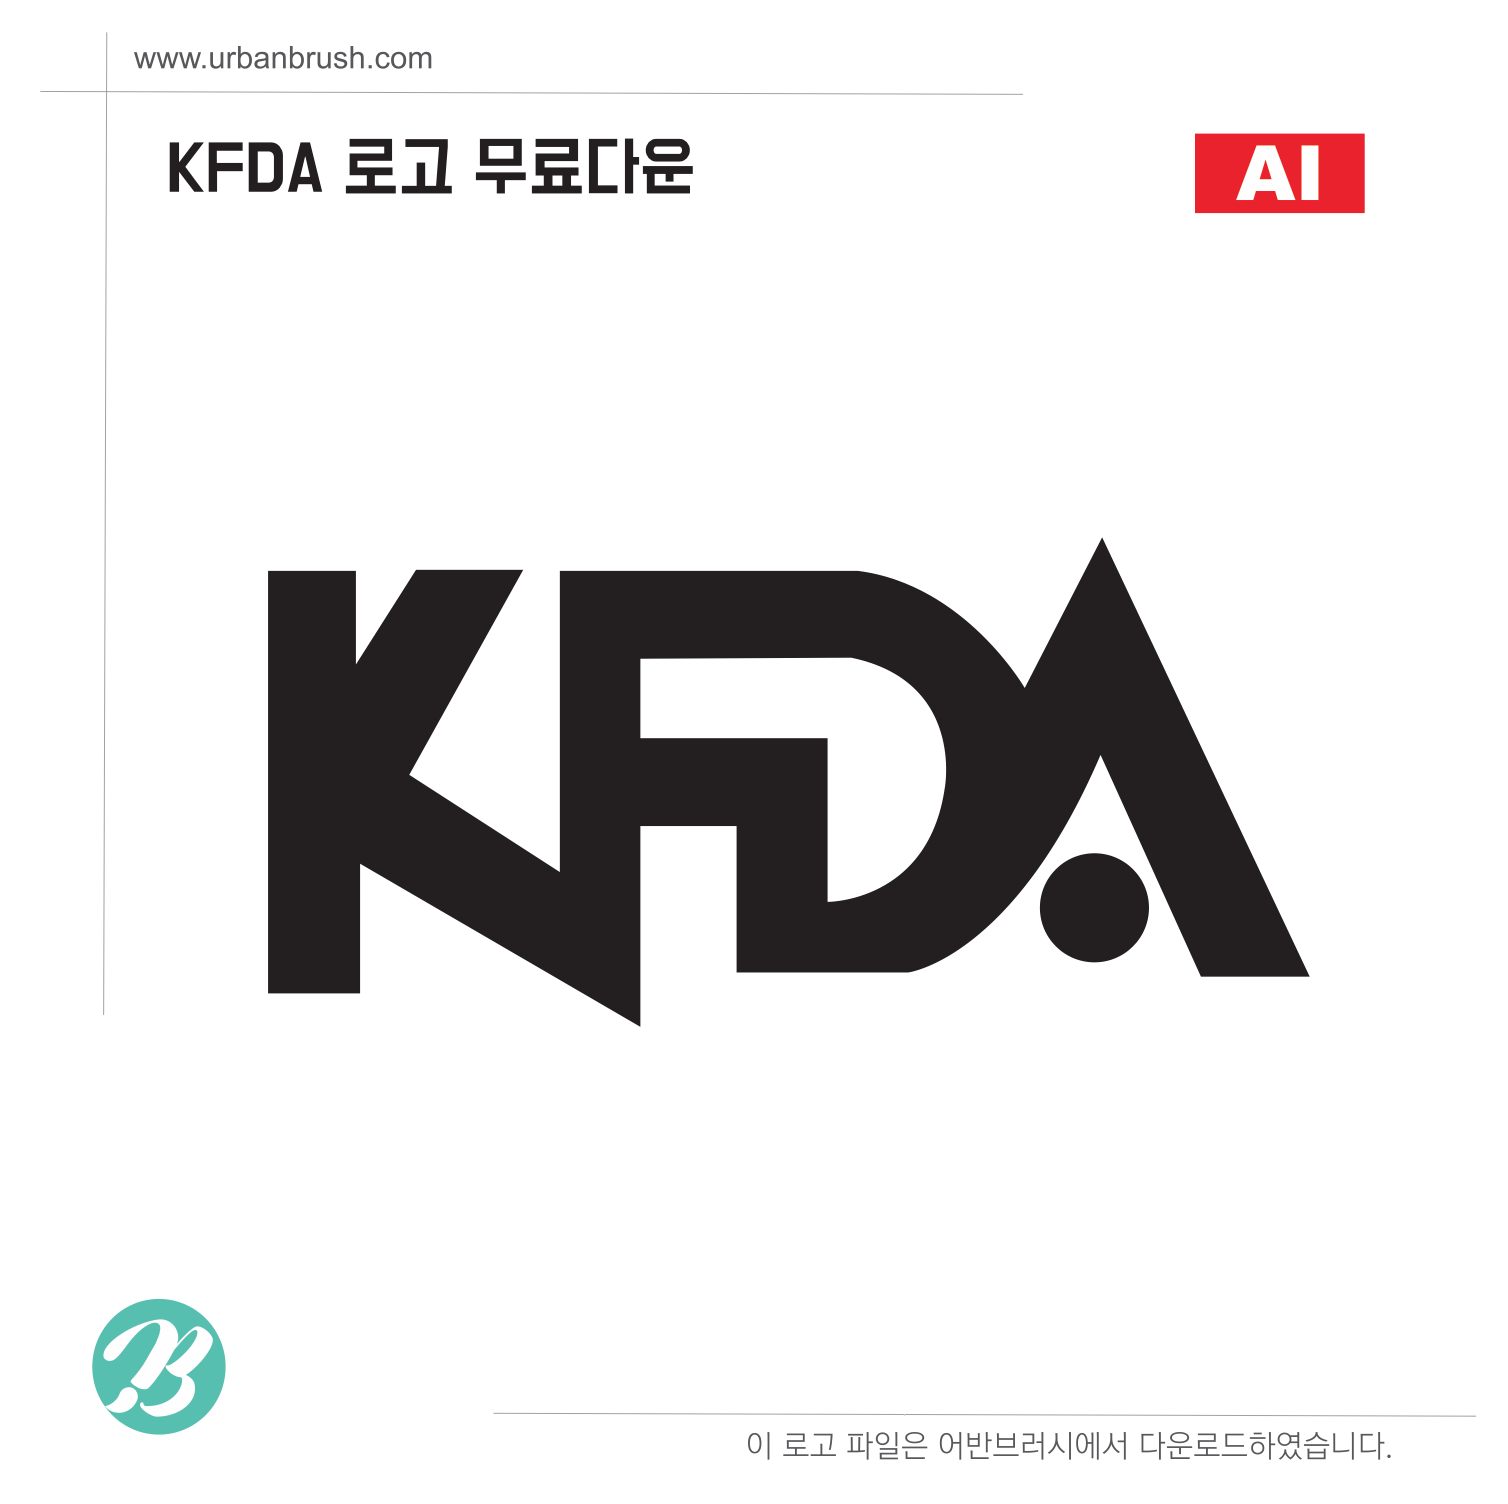 KFDA Logo - KFDA 로고 ai 무료다운로드